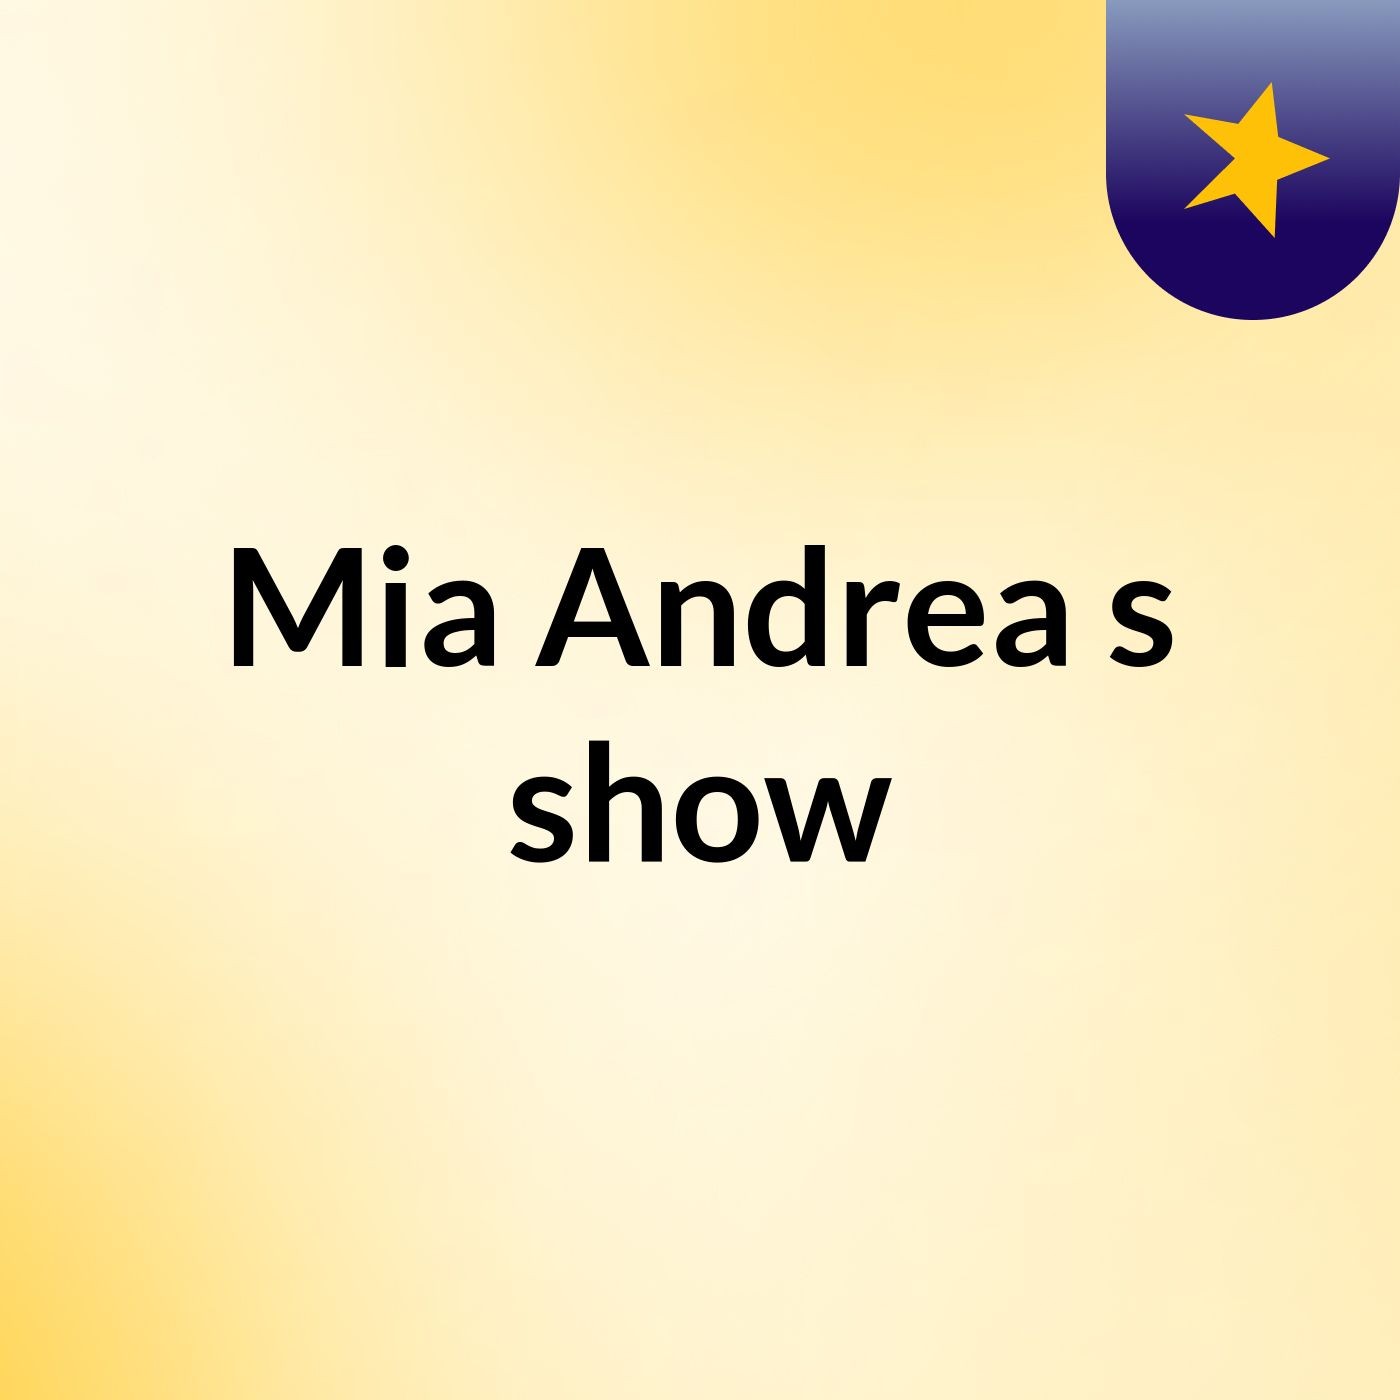 Mia Andrea's show